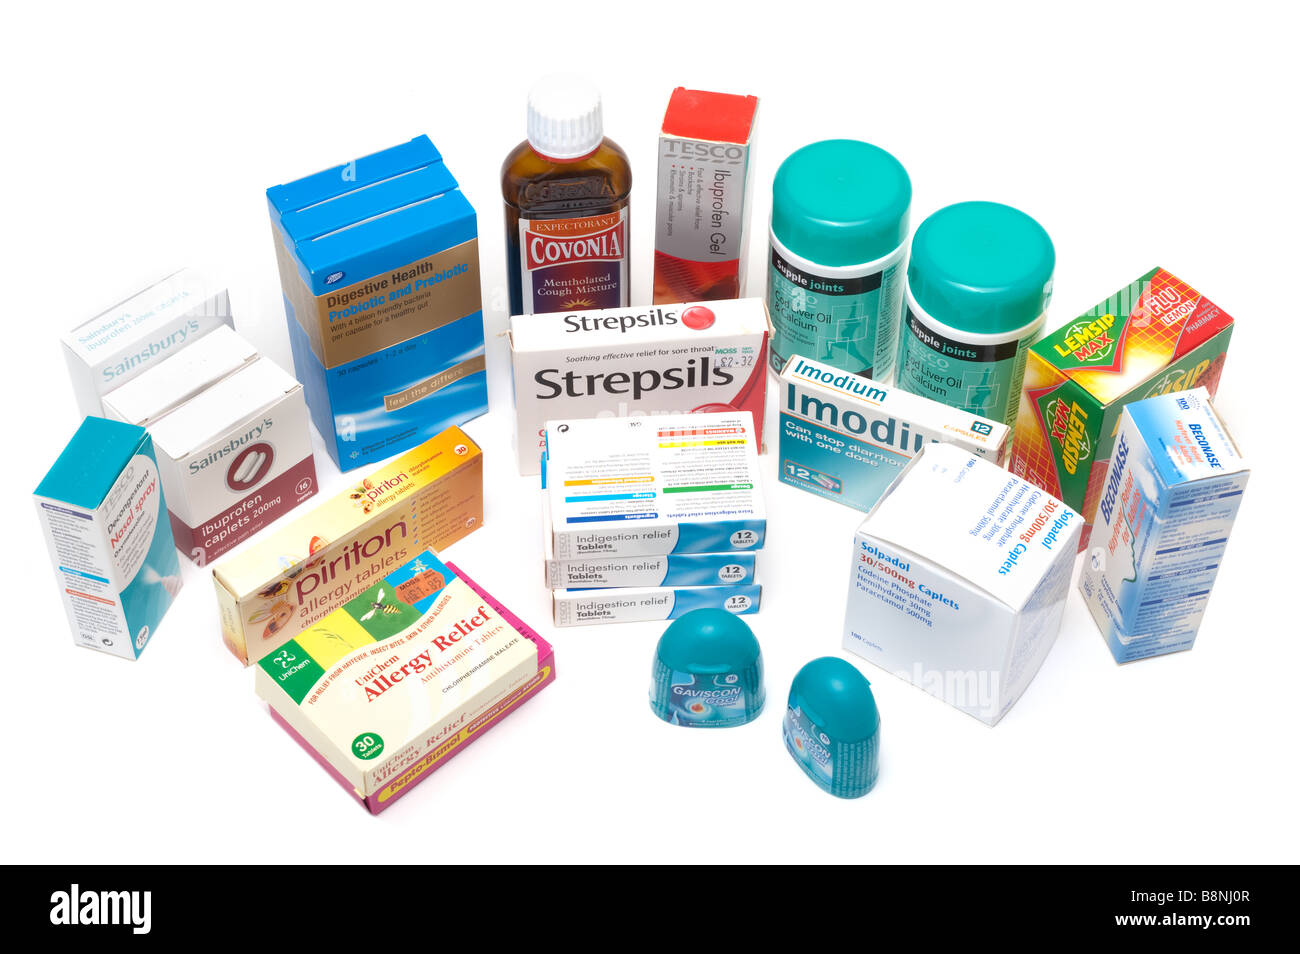 Una selección de productos de marca botellas y cajas de vitaminas y medicamentos analgésicos Foto de stock